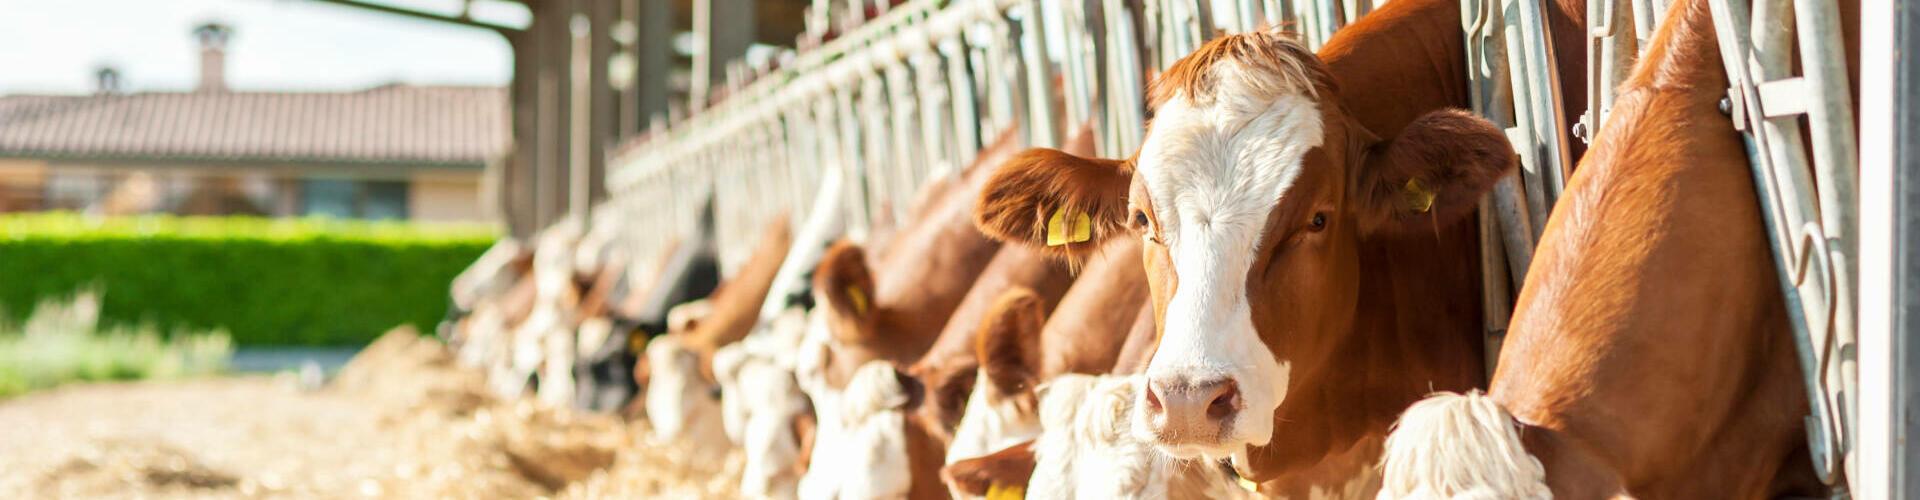 Herdenmanager in der Tierhaltung: Erfahre mehr über die Aufgaben eines Herdenmanagers mit der Spezialisierung Milcherzeugung